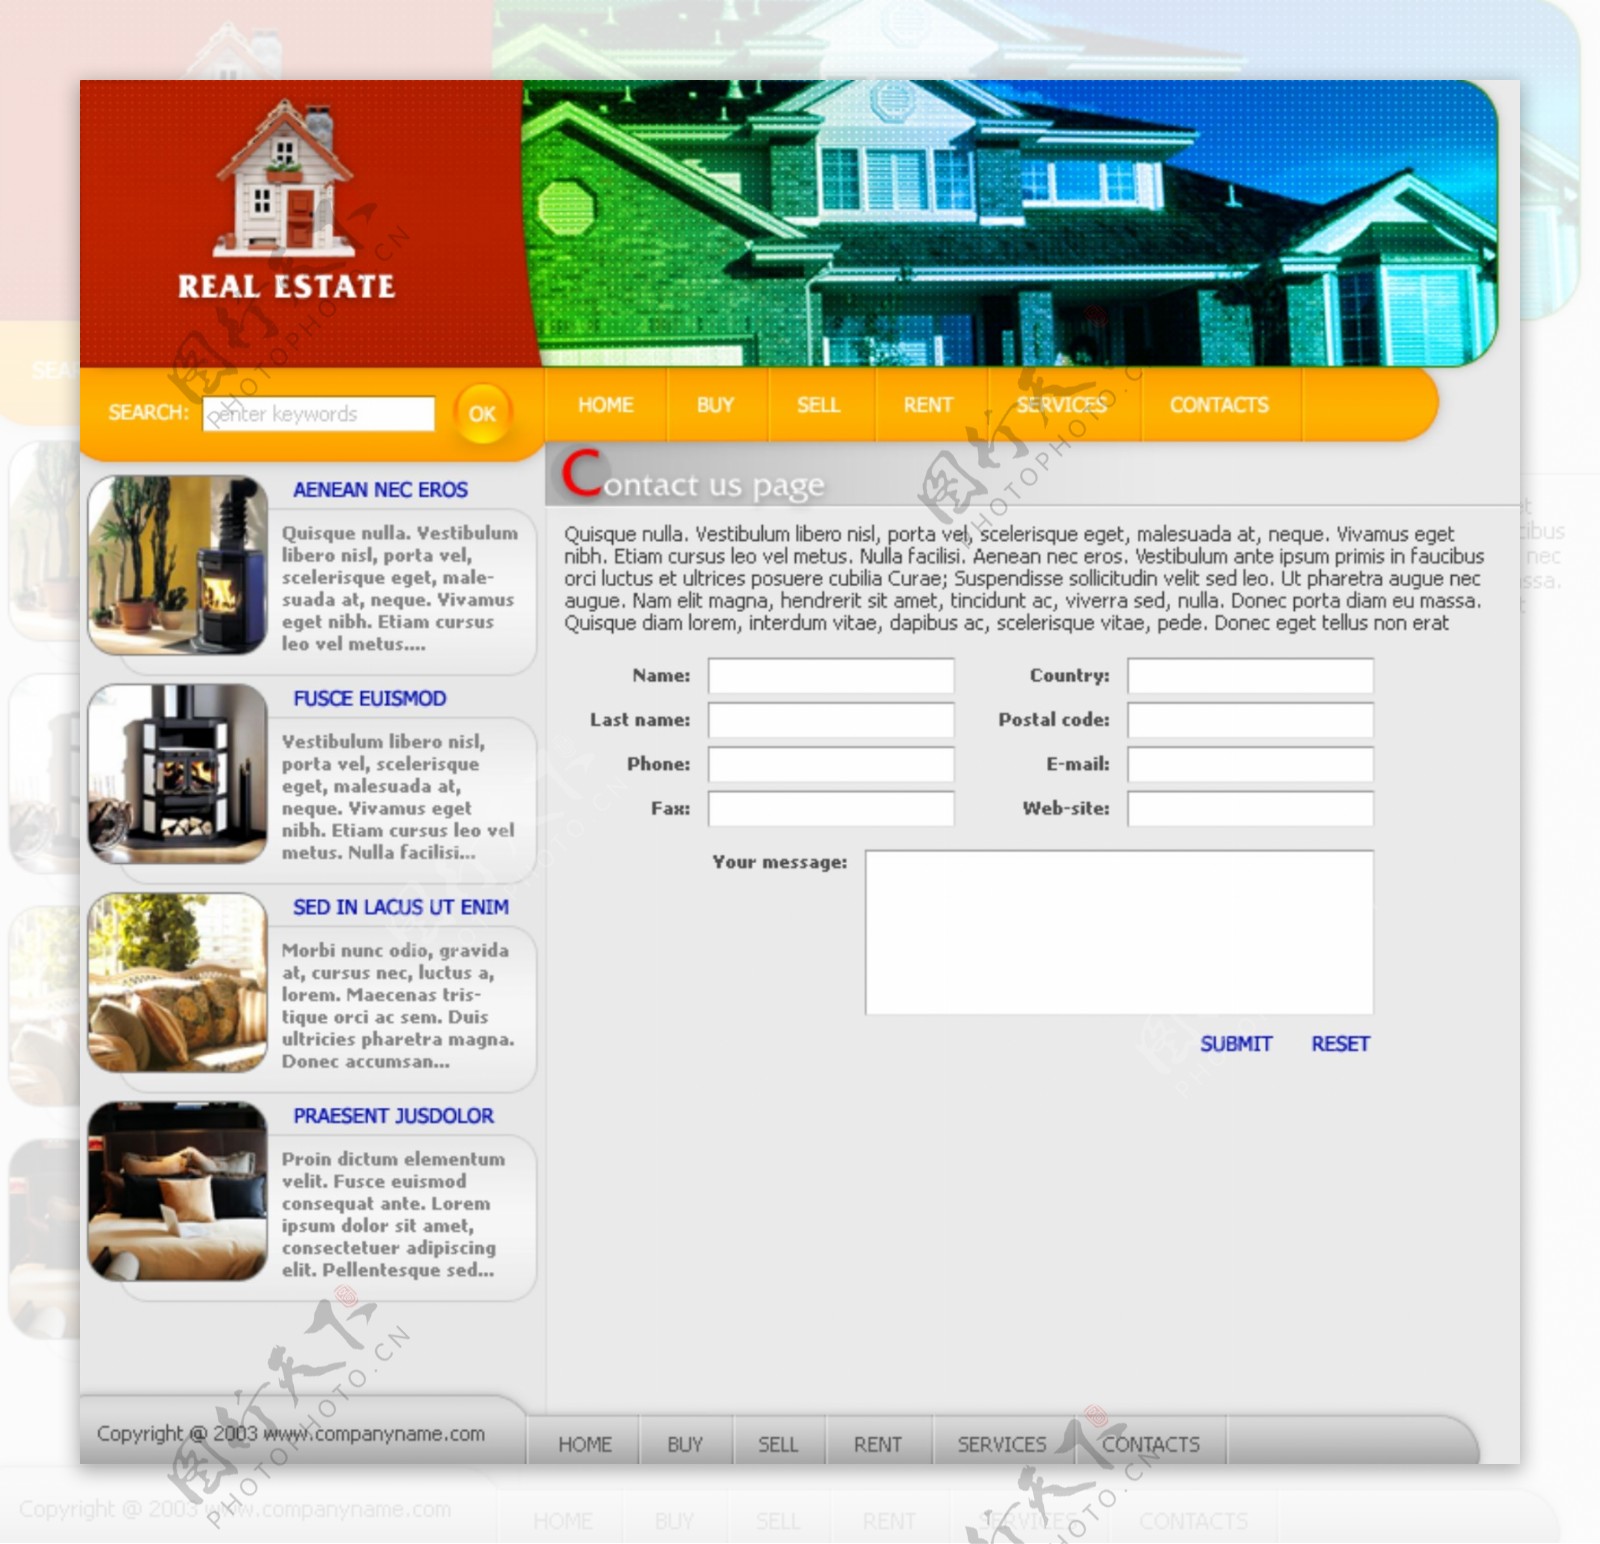 房地产网站网页模板图片